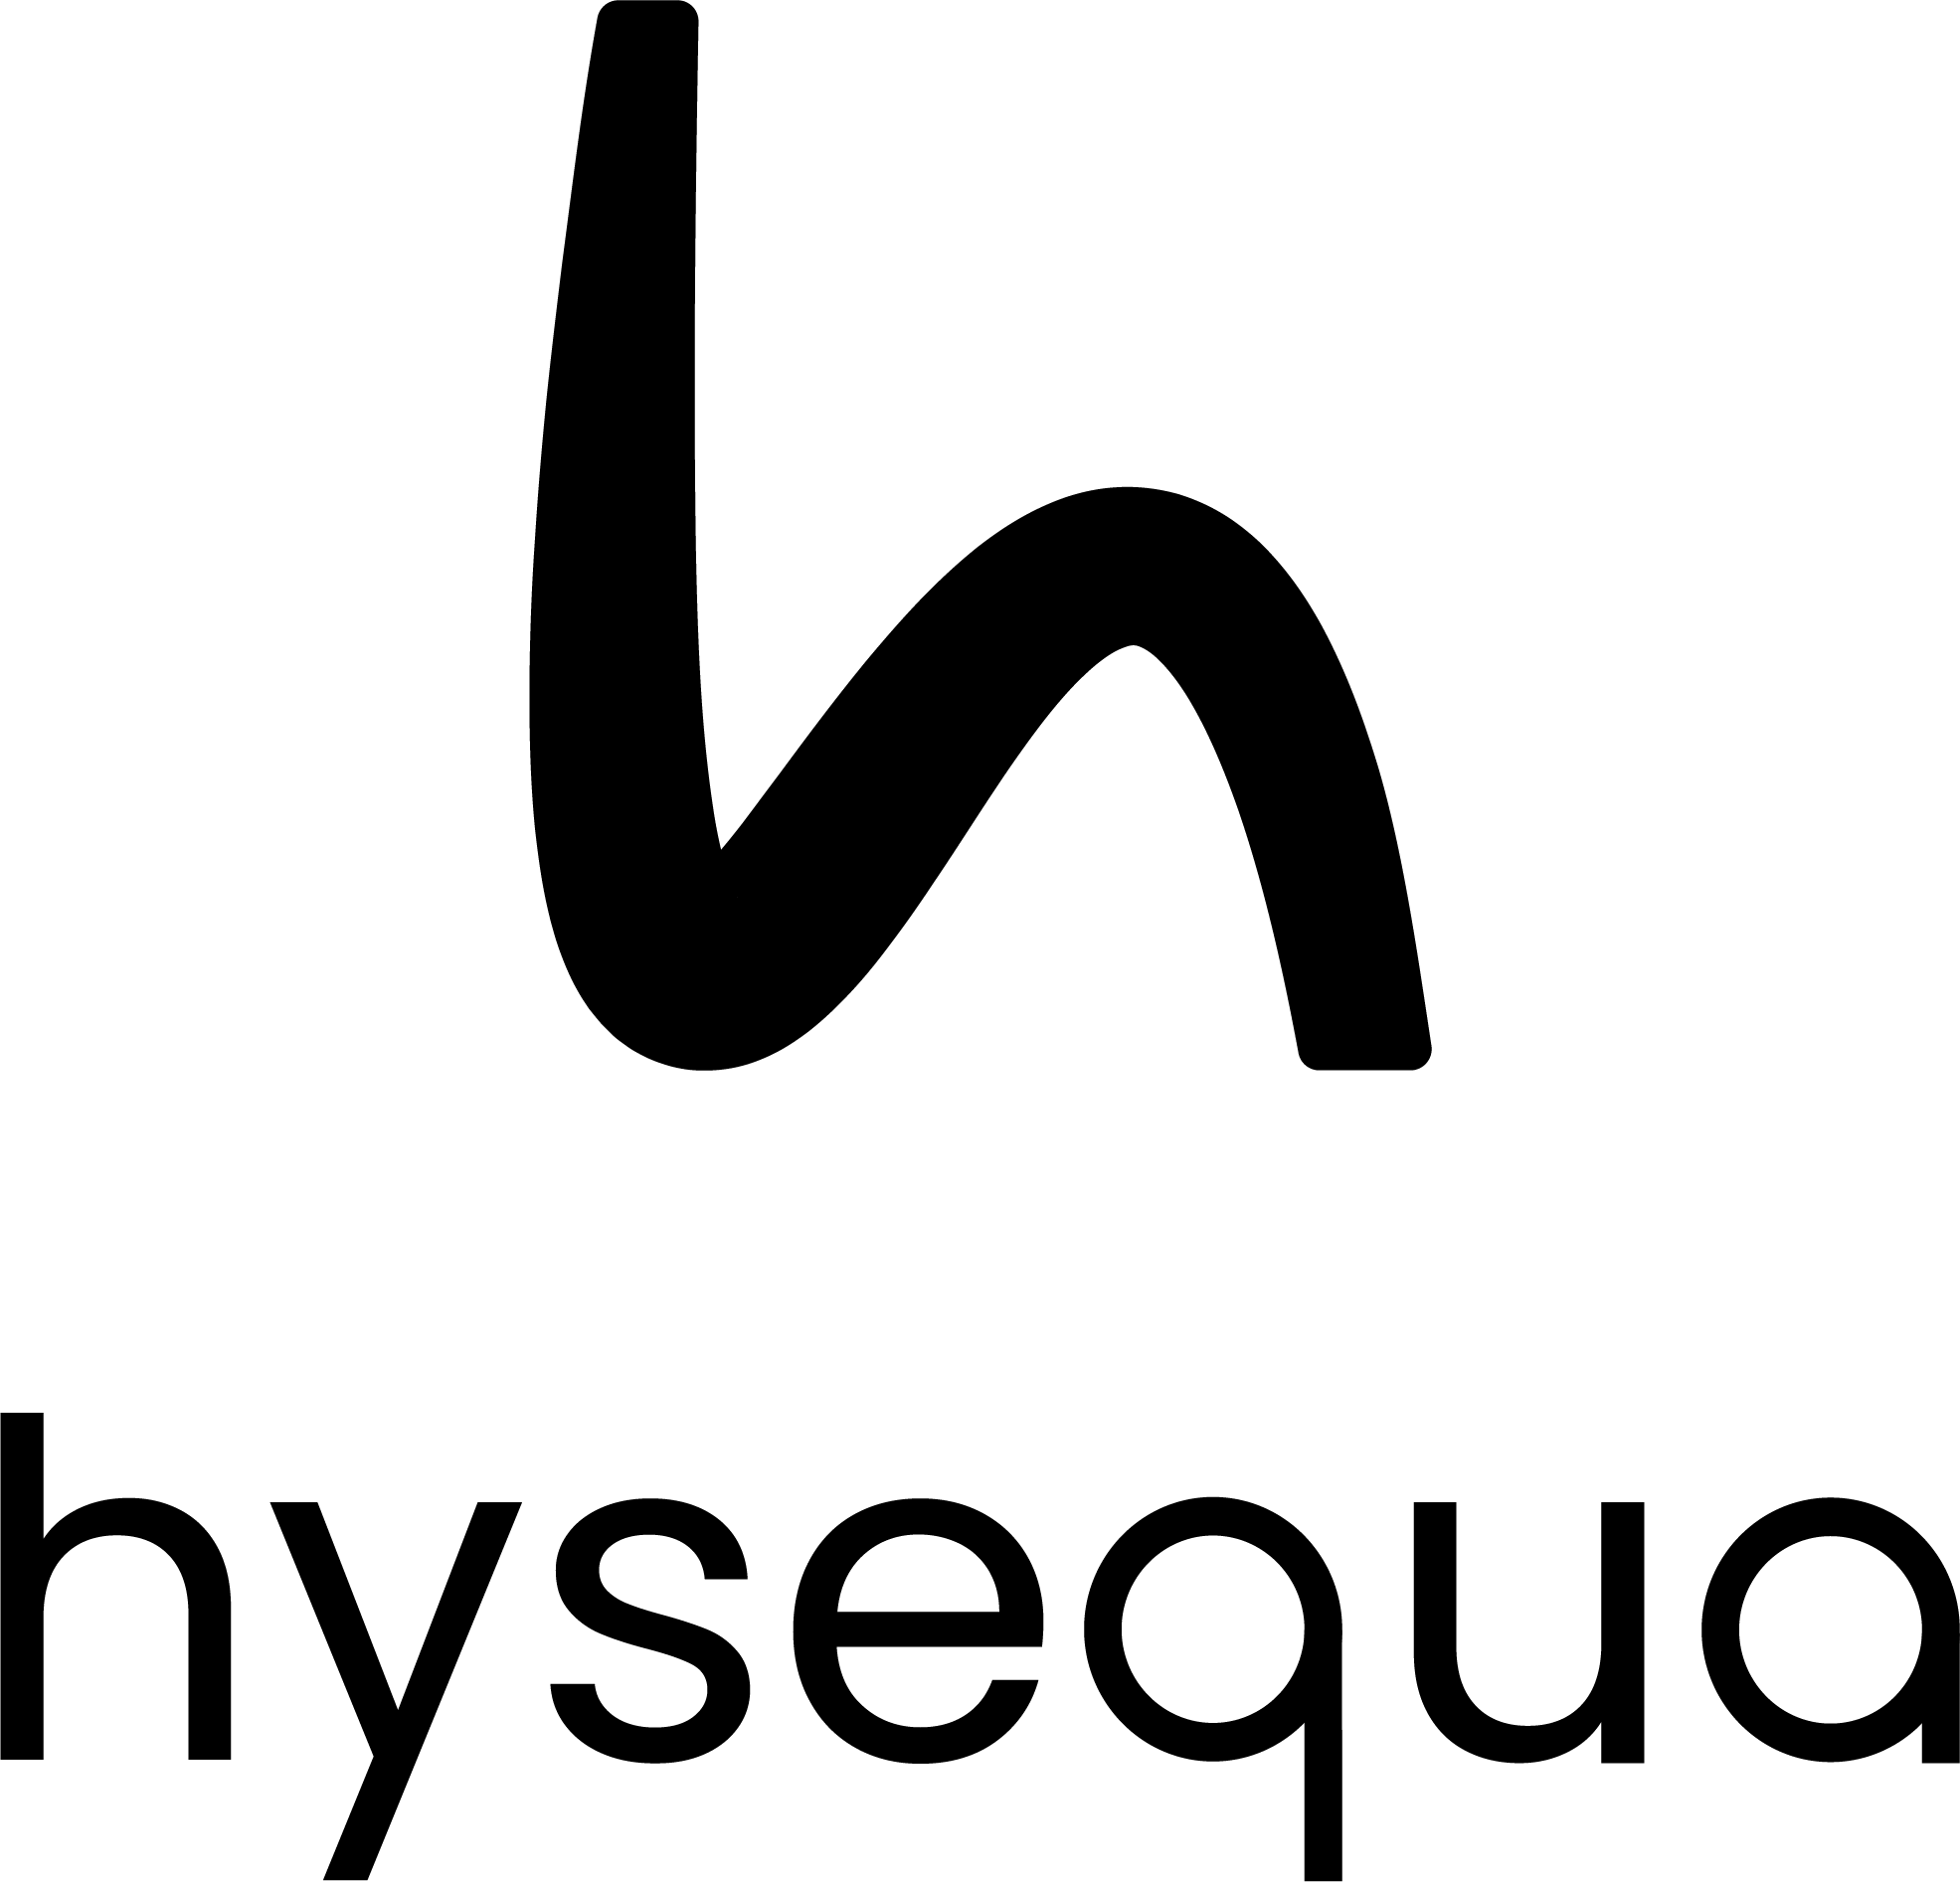 Le logo Hysequa